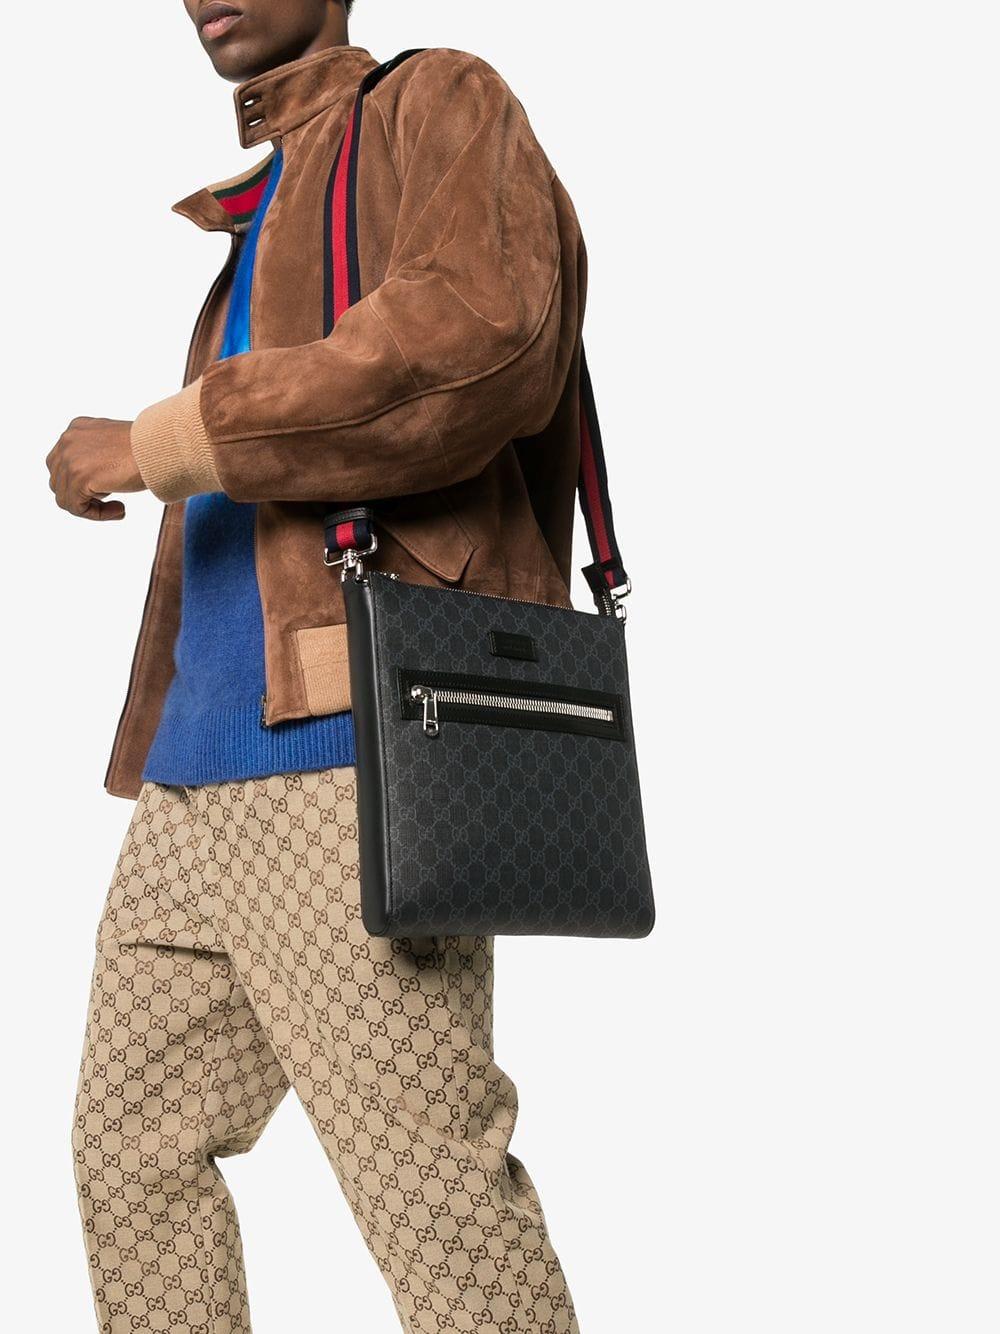 Gucci Canvas Black GG Supreme Messenger Bag for Men - Lyst